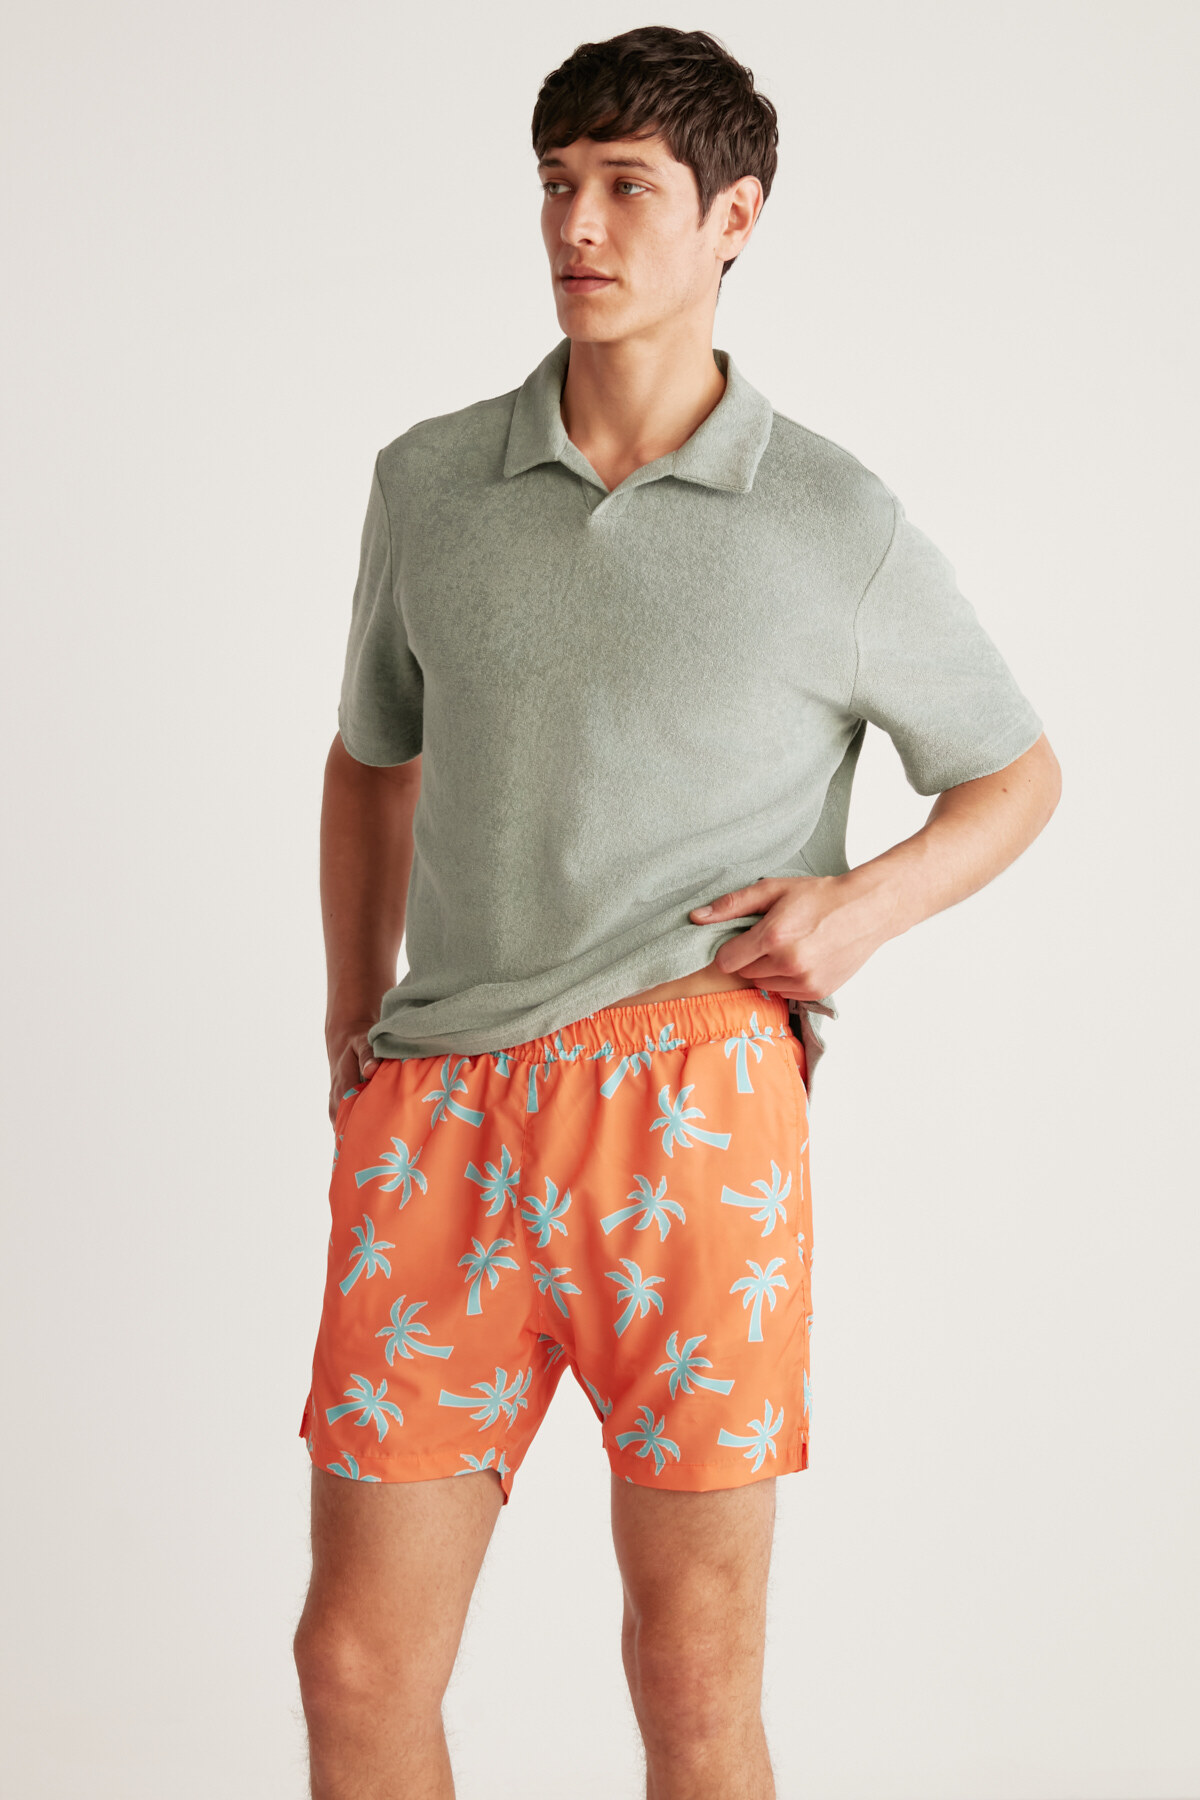 GRIMELANGE Isola Men's Lined 3-Pocket Water Repellent Fabric Marine Shorts